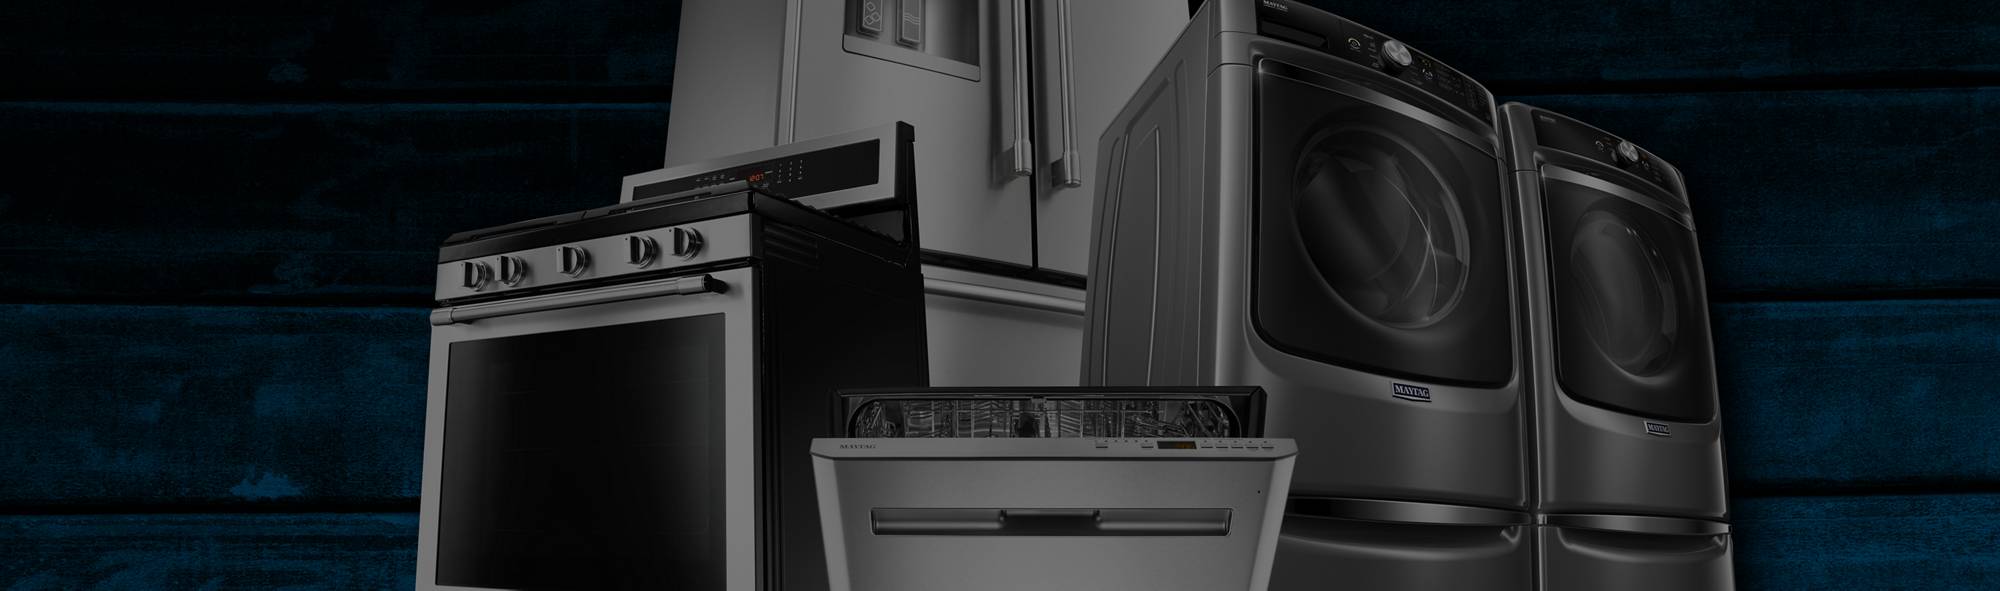 owner appliance help & repair | maytag